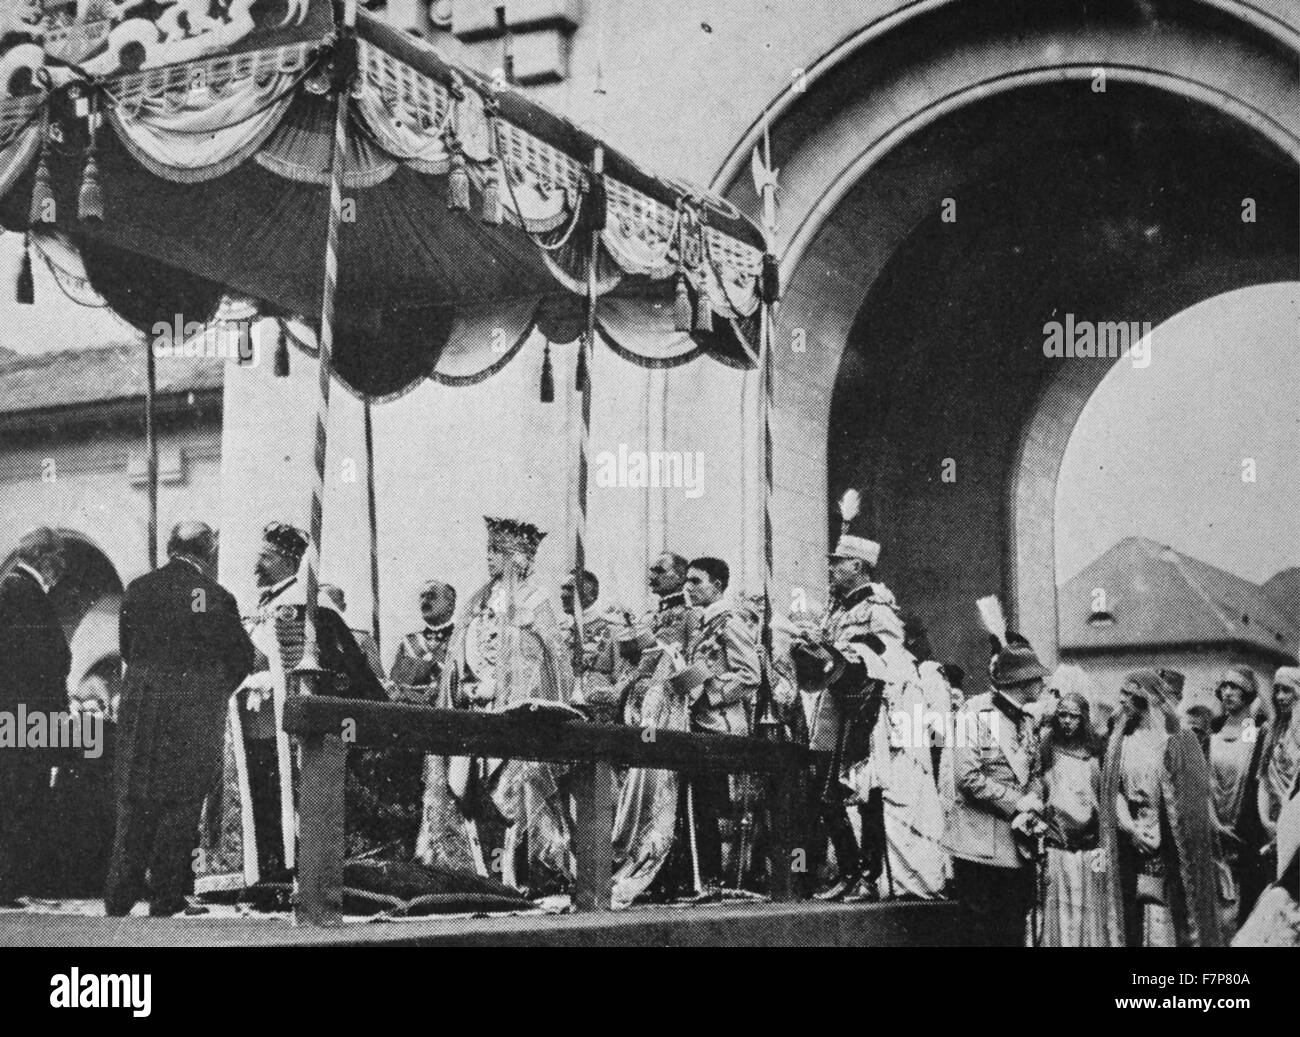 L'incoronazione del Re Ferdinando I e la Regina Maria di Romania, nella piccola città di Alba Iulia il 15 ottobre 1922. A causa della guerra le cerimonie era stata rinviata dal 1914. Foto Stock